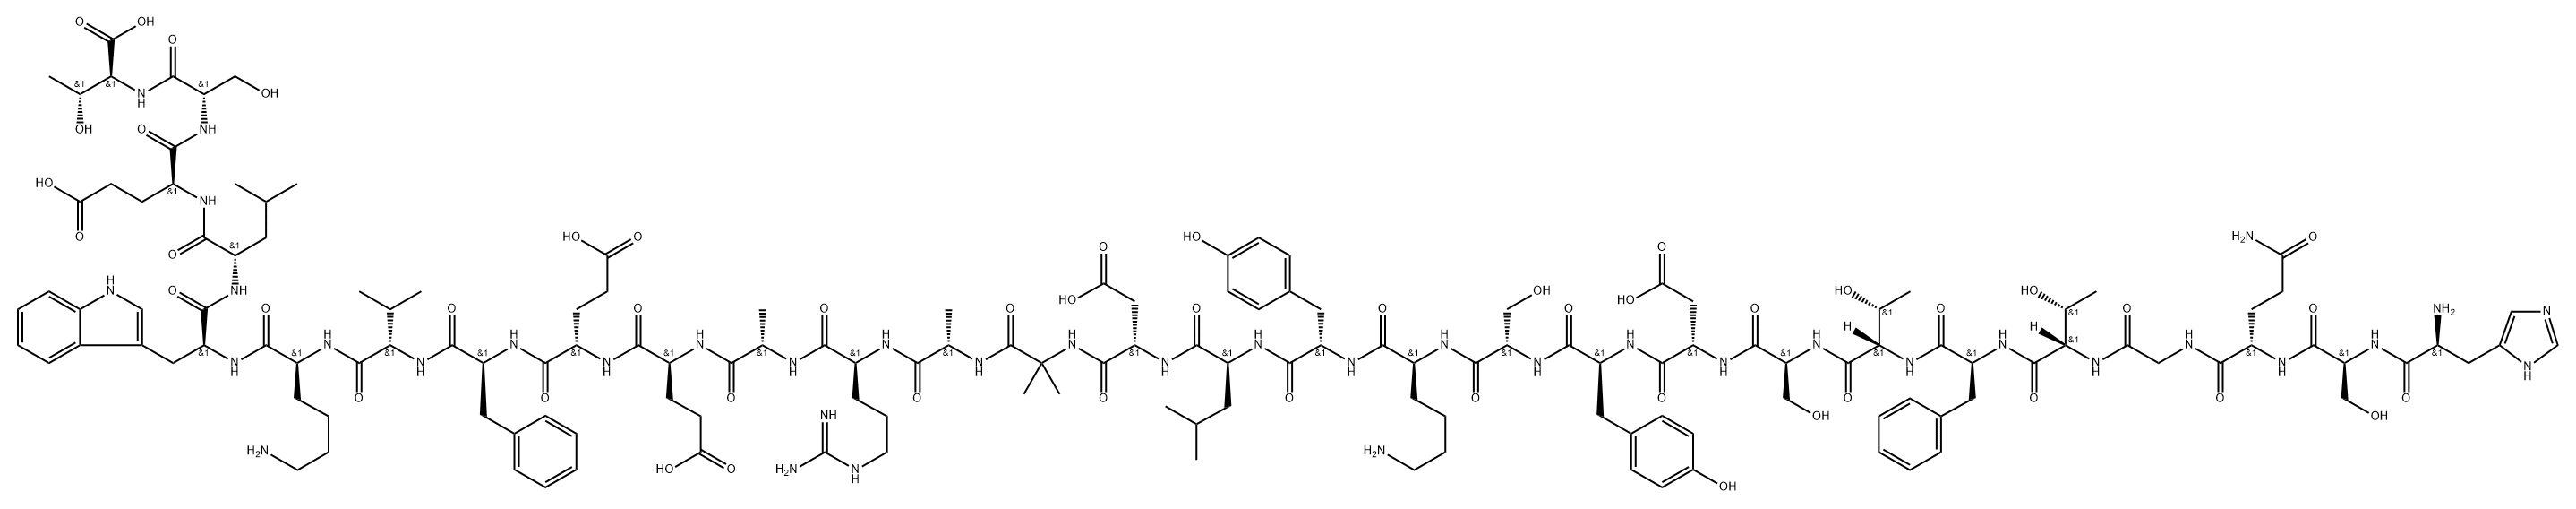 L-Threonine, L-histidyl-L-seryl-L-glutaminylglycyl-L-threonyl-L-phenylalanyl-L-threonyl-L-seryl-L-α-aspartyl-L-tyrosyl-L-seryl-L-lysyl-L-tyrosyl-L-leucyl-L-α-aspartyl-2-methylalanyl-L-alanyl-L-arginyl-L-alanyl-L-α-glutamyl-L-α-glutamyl-L-phenylalanyl-L-valyl-L-lysyl-L-tryptophyl-L-leucyl-L-α-glutamyl-L-seryl- Struktur